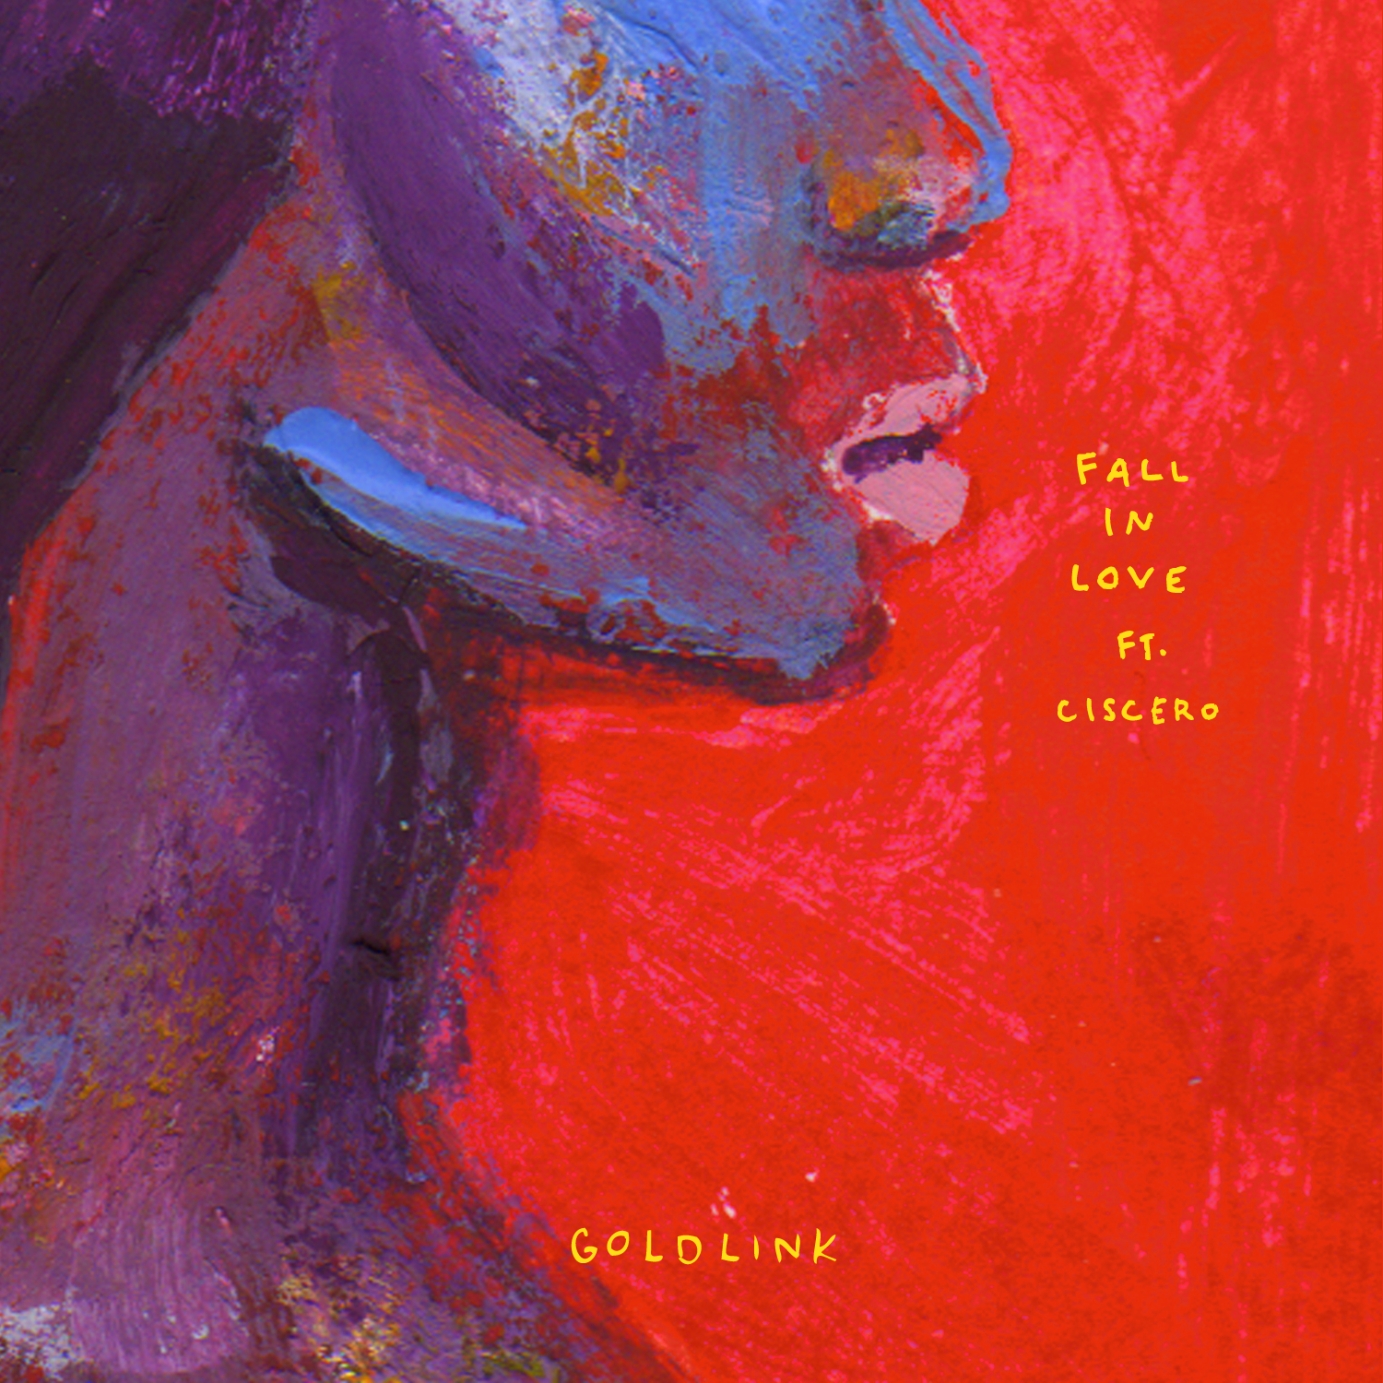 GoldLink "Fall in Love"